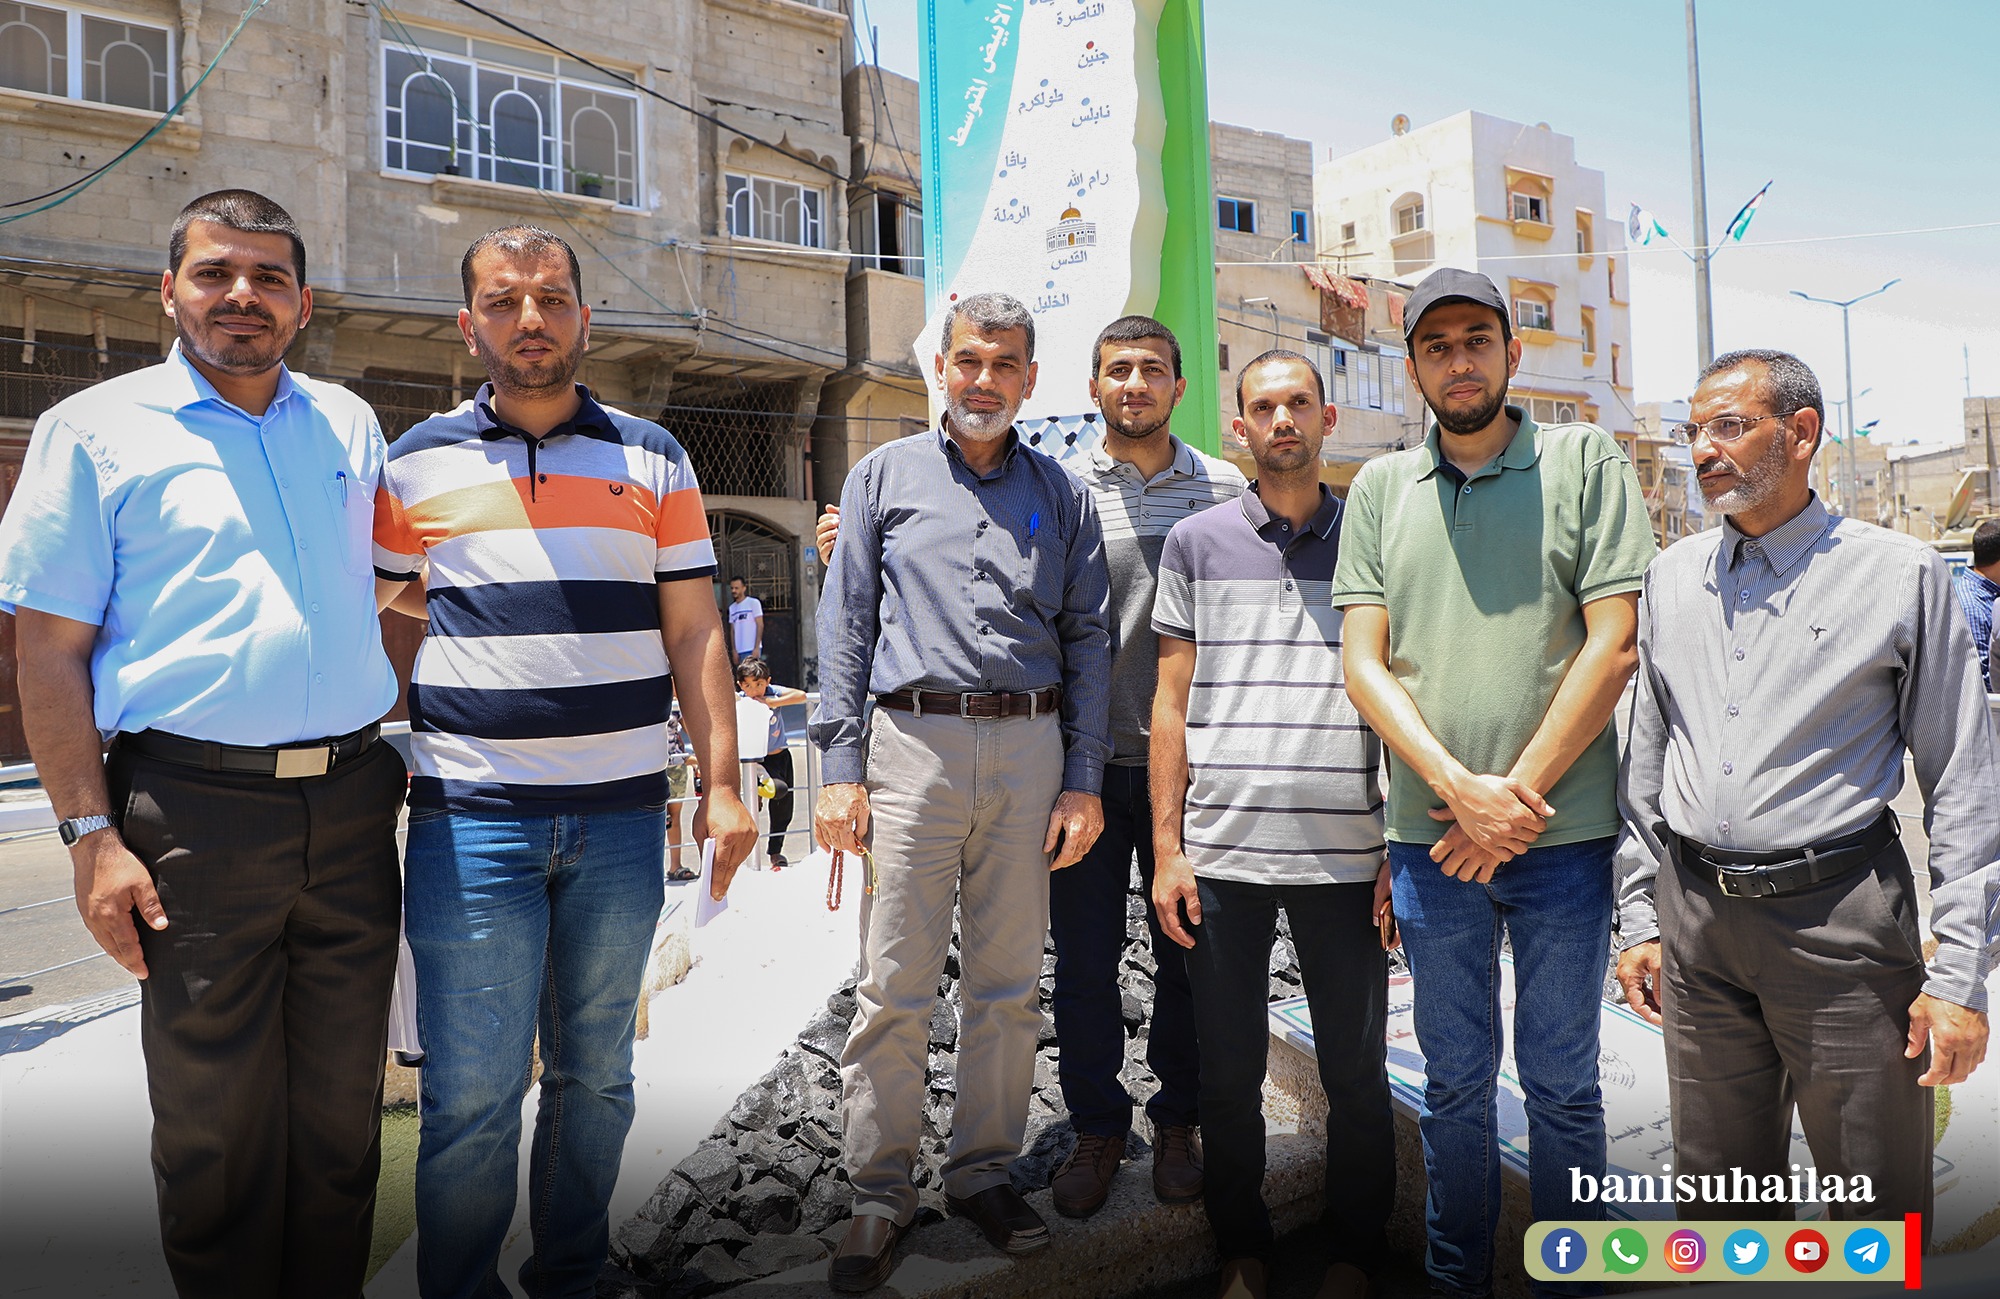 صور من افتتاح ميدان شيرين أبو عاقلة نشرتها صفحة بلدية بني سهيلا على فيسبوك